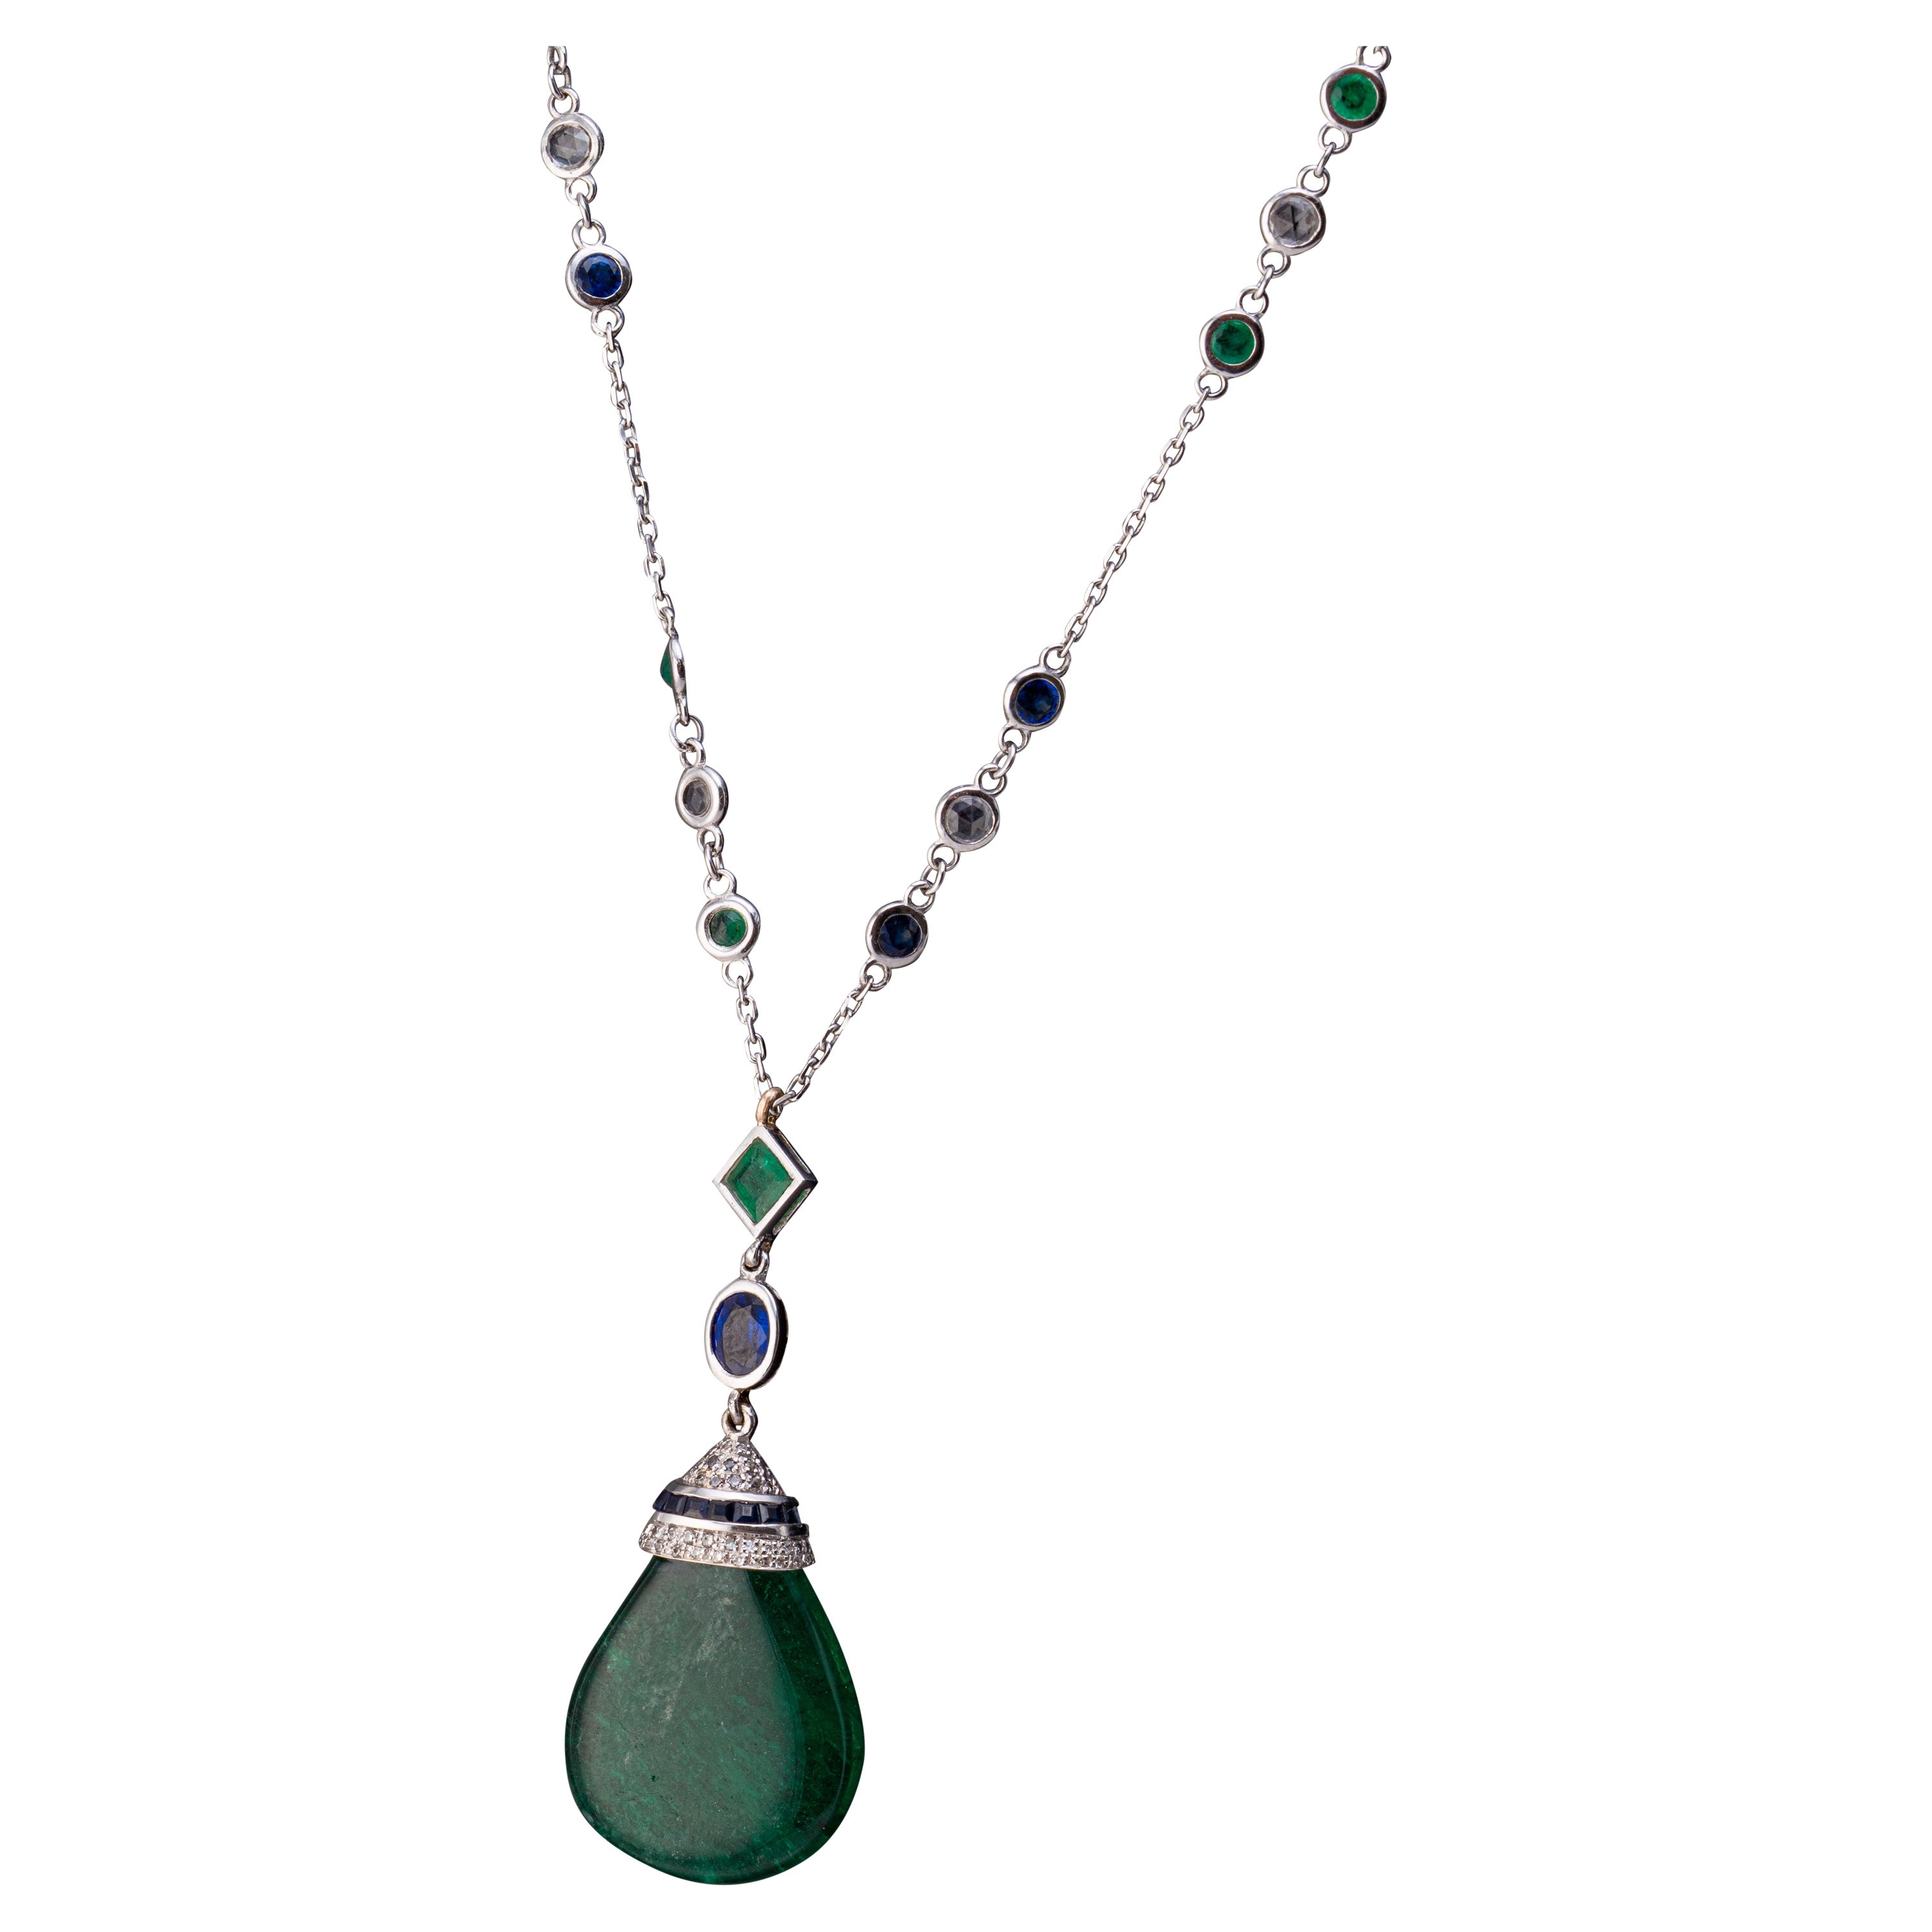 Certified 23.95 Carat Emerald Drop Pendant Necklace For Sale